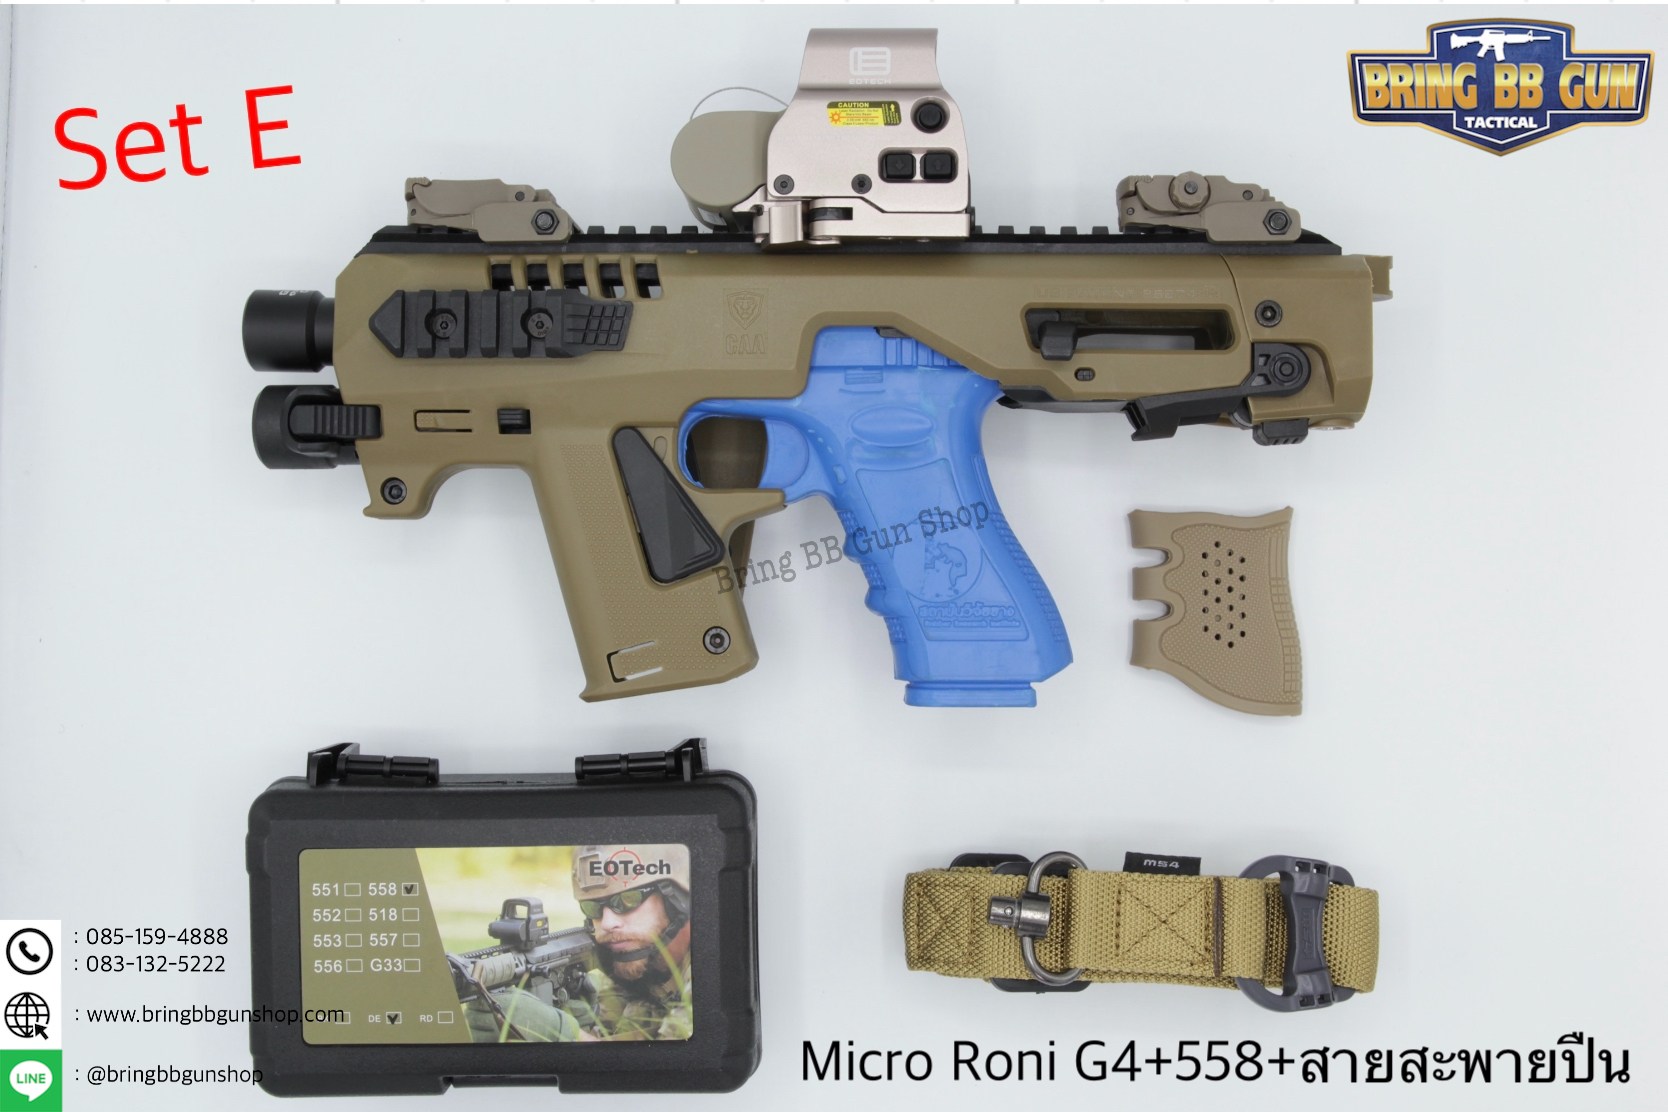 ชุดสุดคุ้ม Micro Roni Gen 4+ เรทดอท + สายสะพายปืน ชุดประกอบปืนสั้น Micro Roni Gen4(Glock)  สำหรับปืนGlock17/18/19/22/31